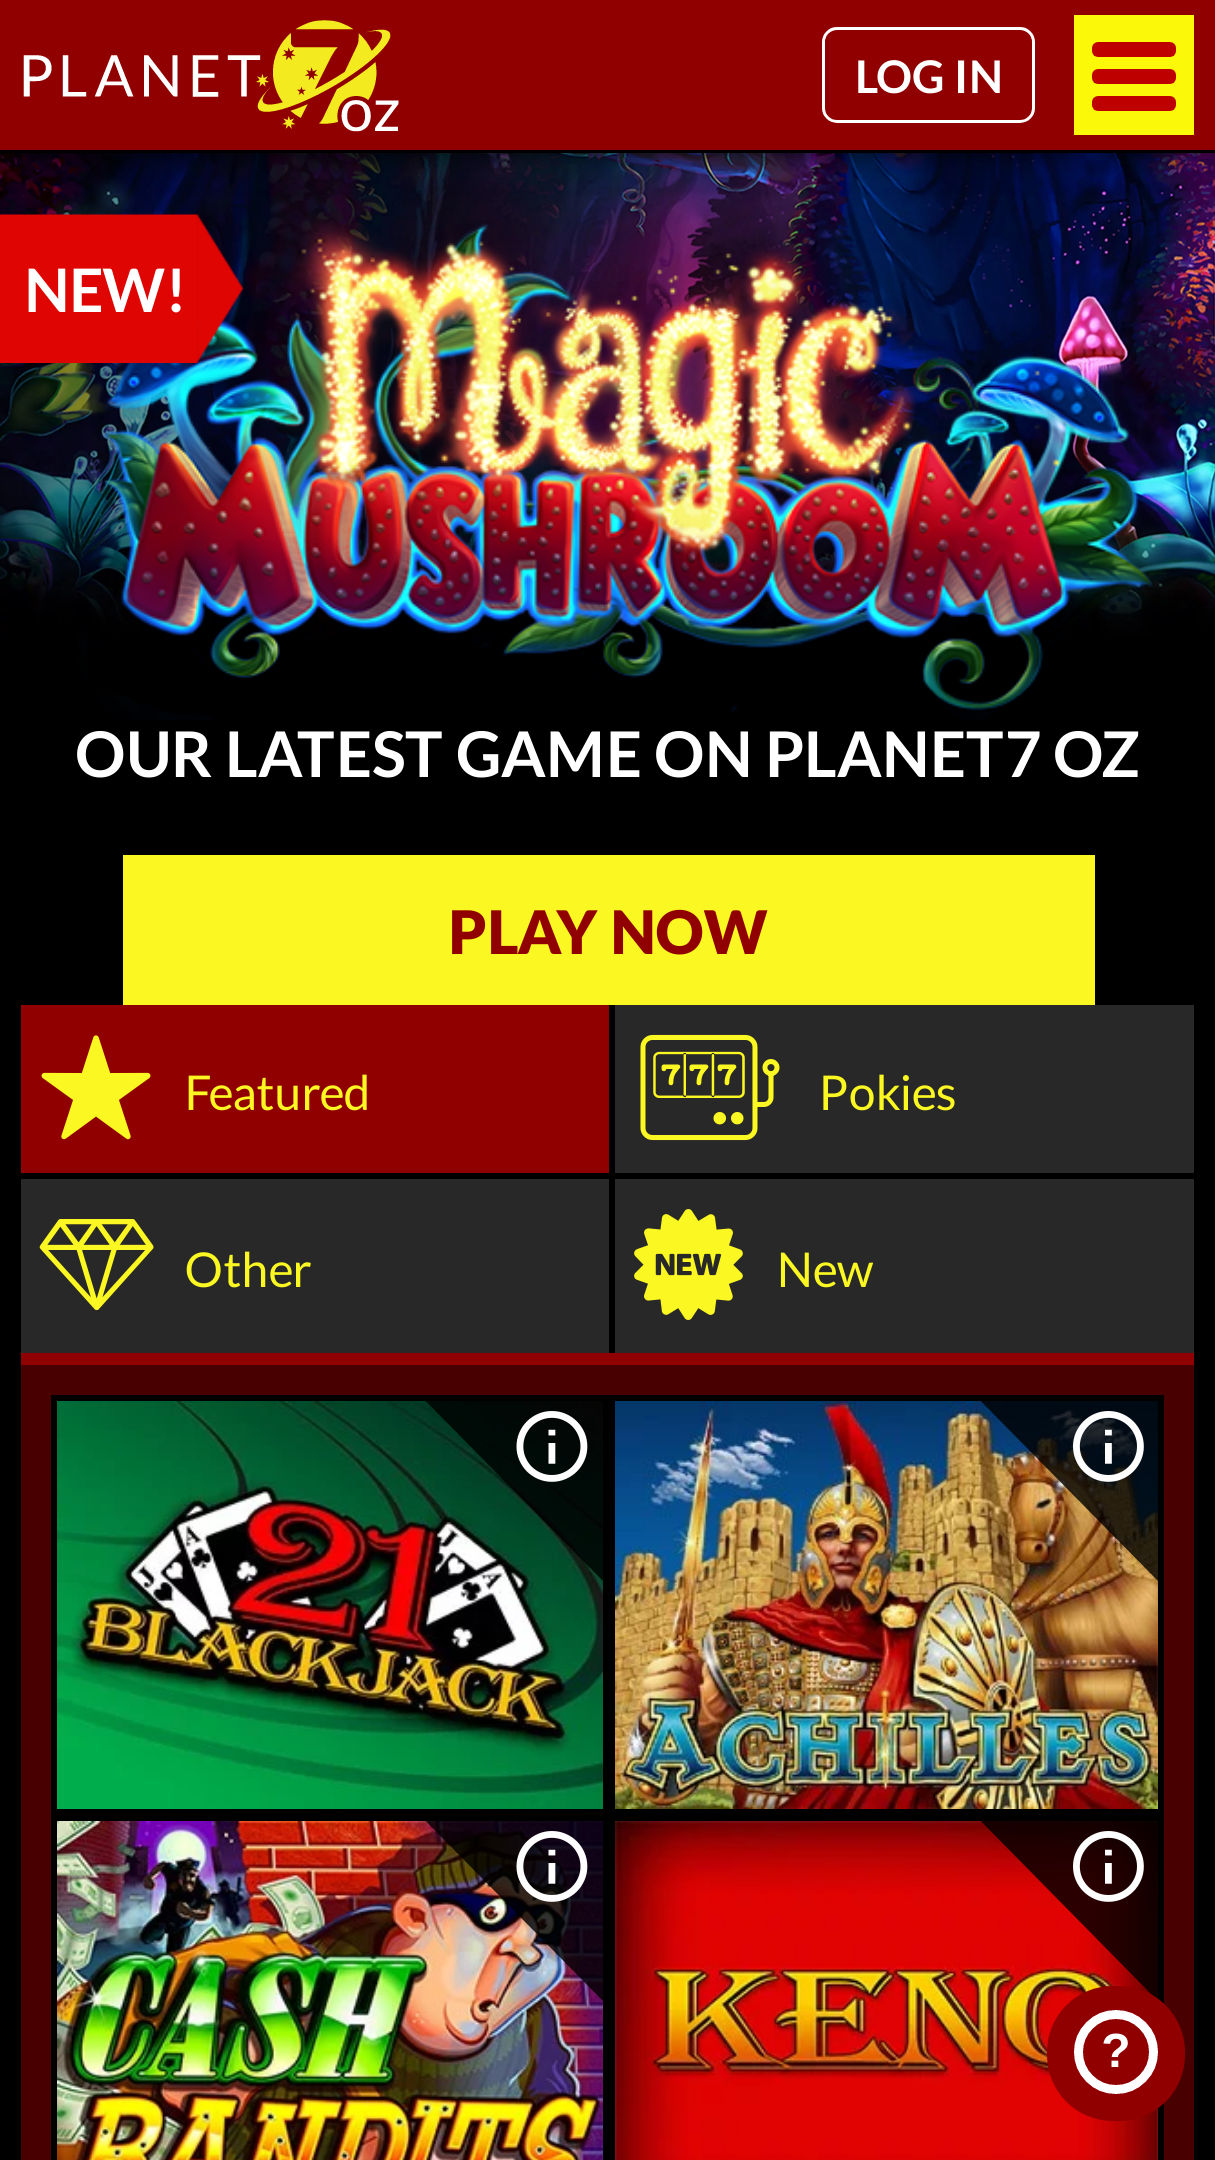 Planet 7 oz casino $200 no deposit bonus codes 2019